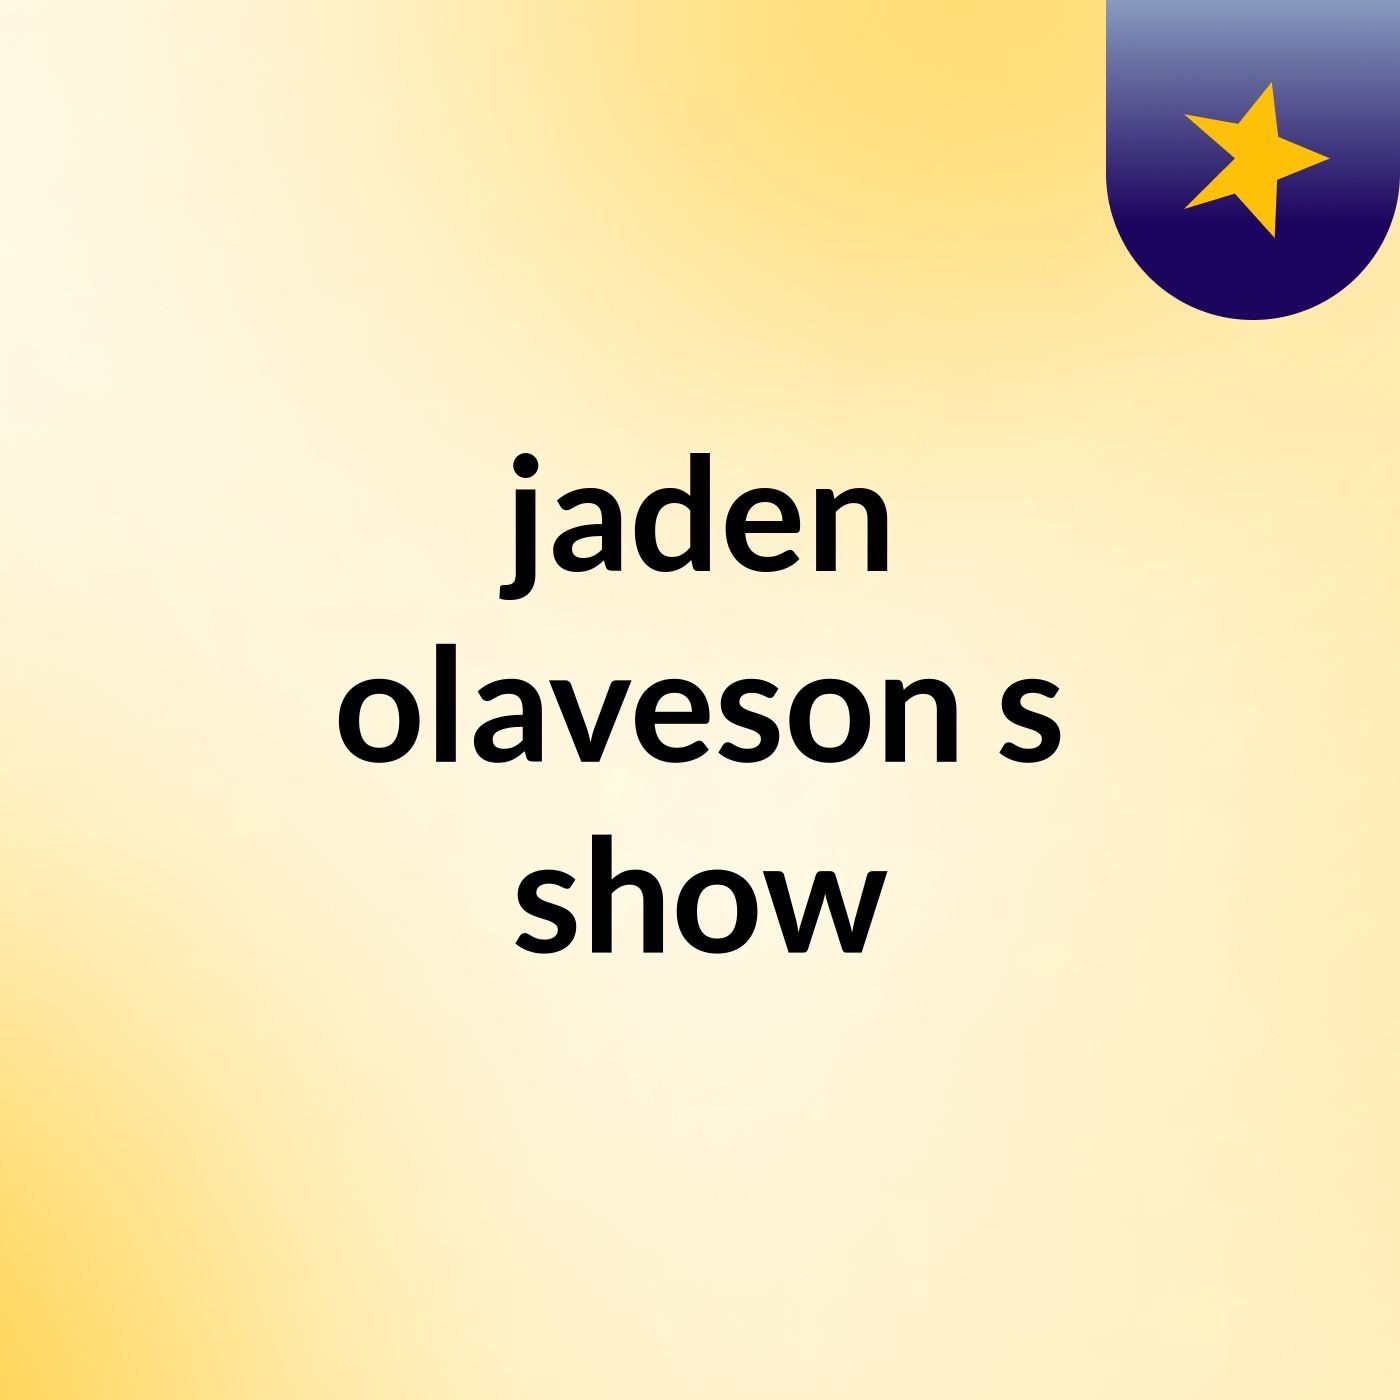 jaden olaveson's show